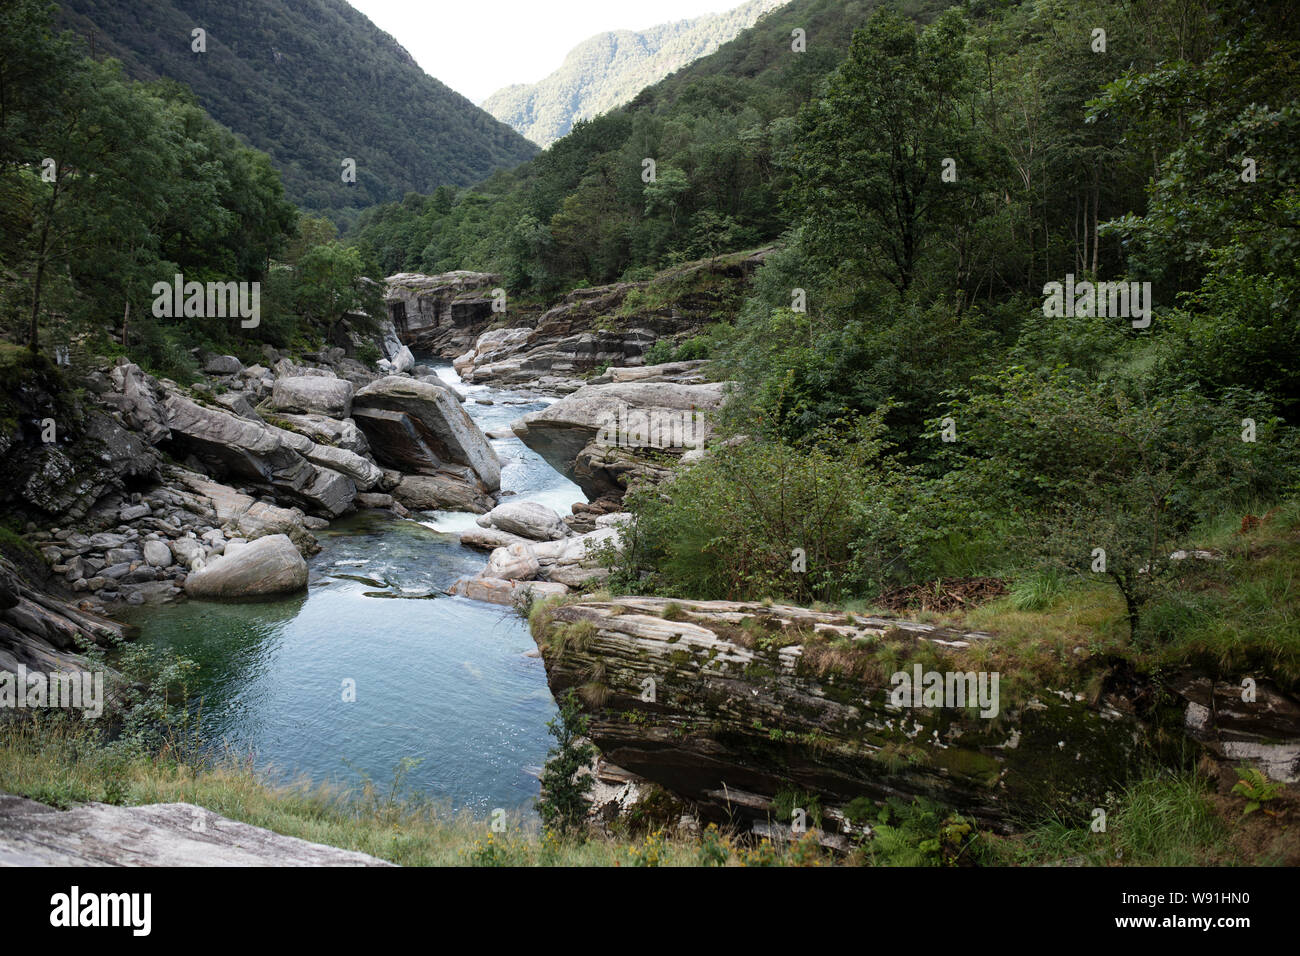 La Verzasca River coule sur des roches et des pierres dans la vallée de la Verzasca à Lavertezzo, dans la région de Tessin (Suisse). Banque D'Images